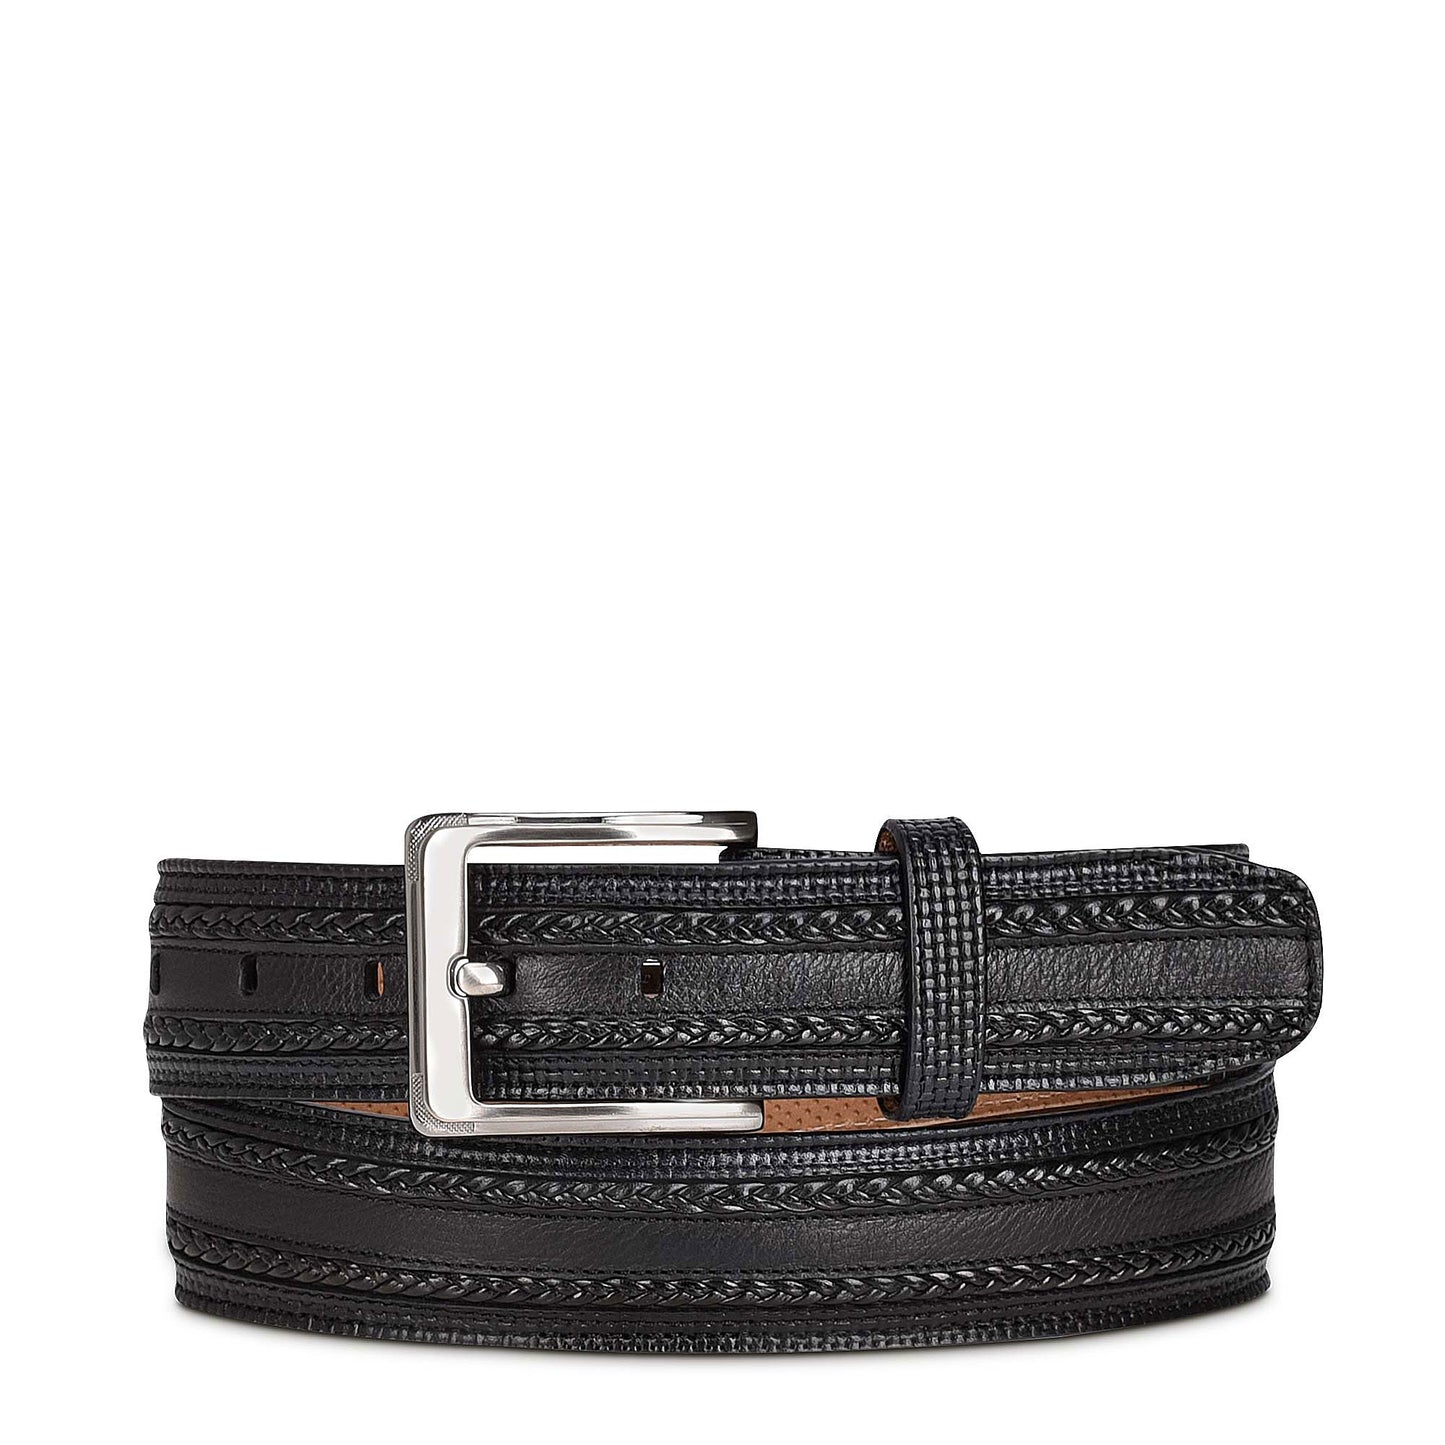 Engraved black leather belt